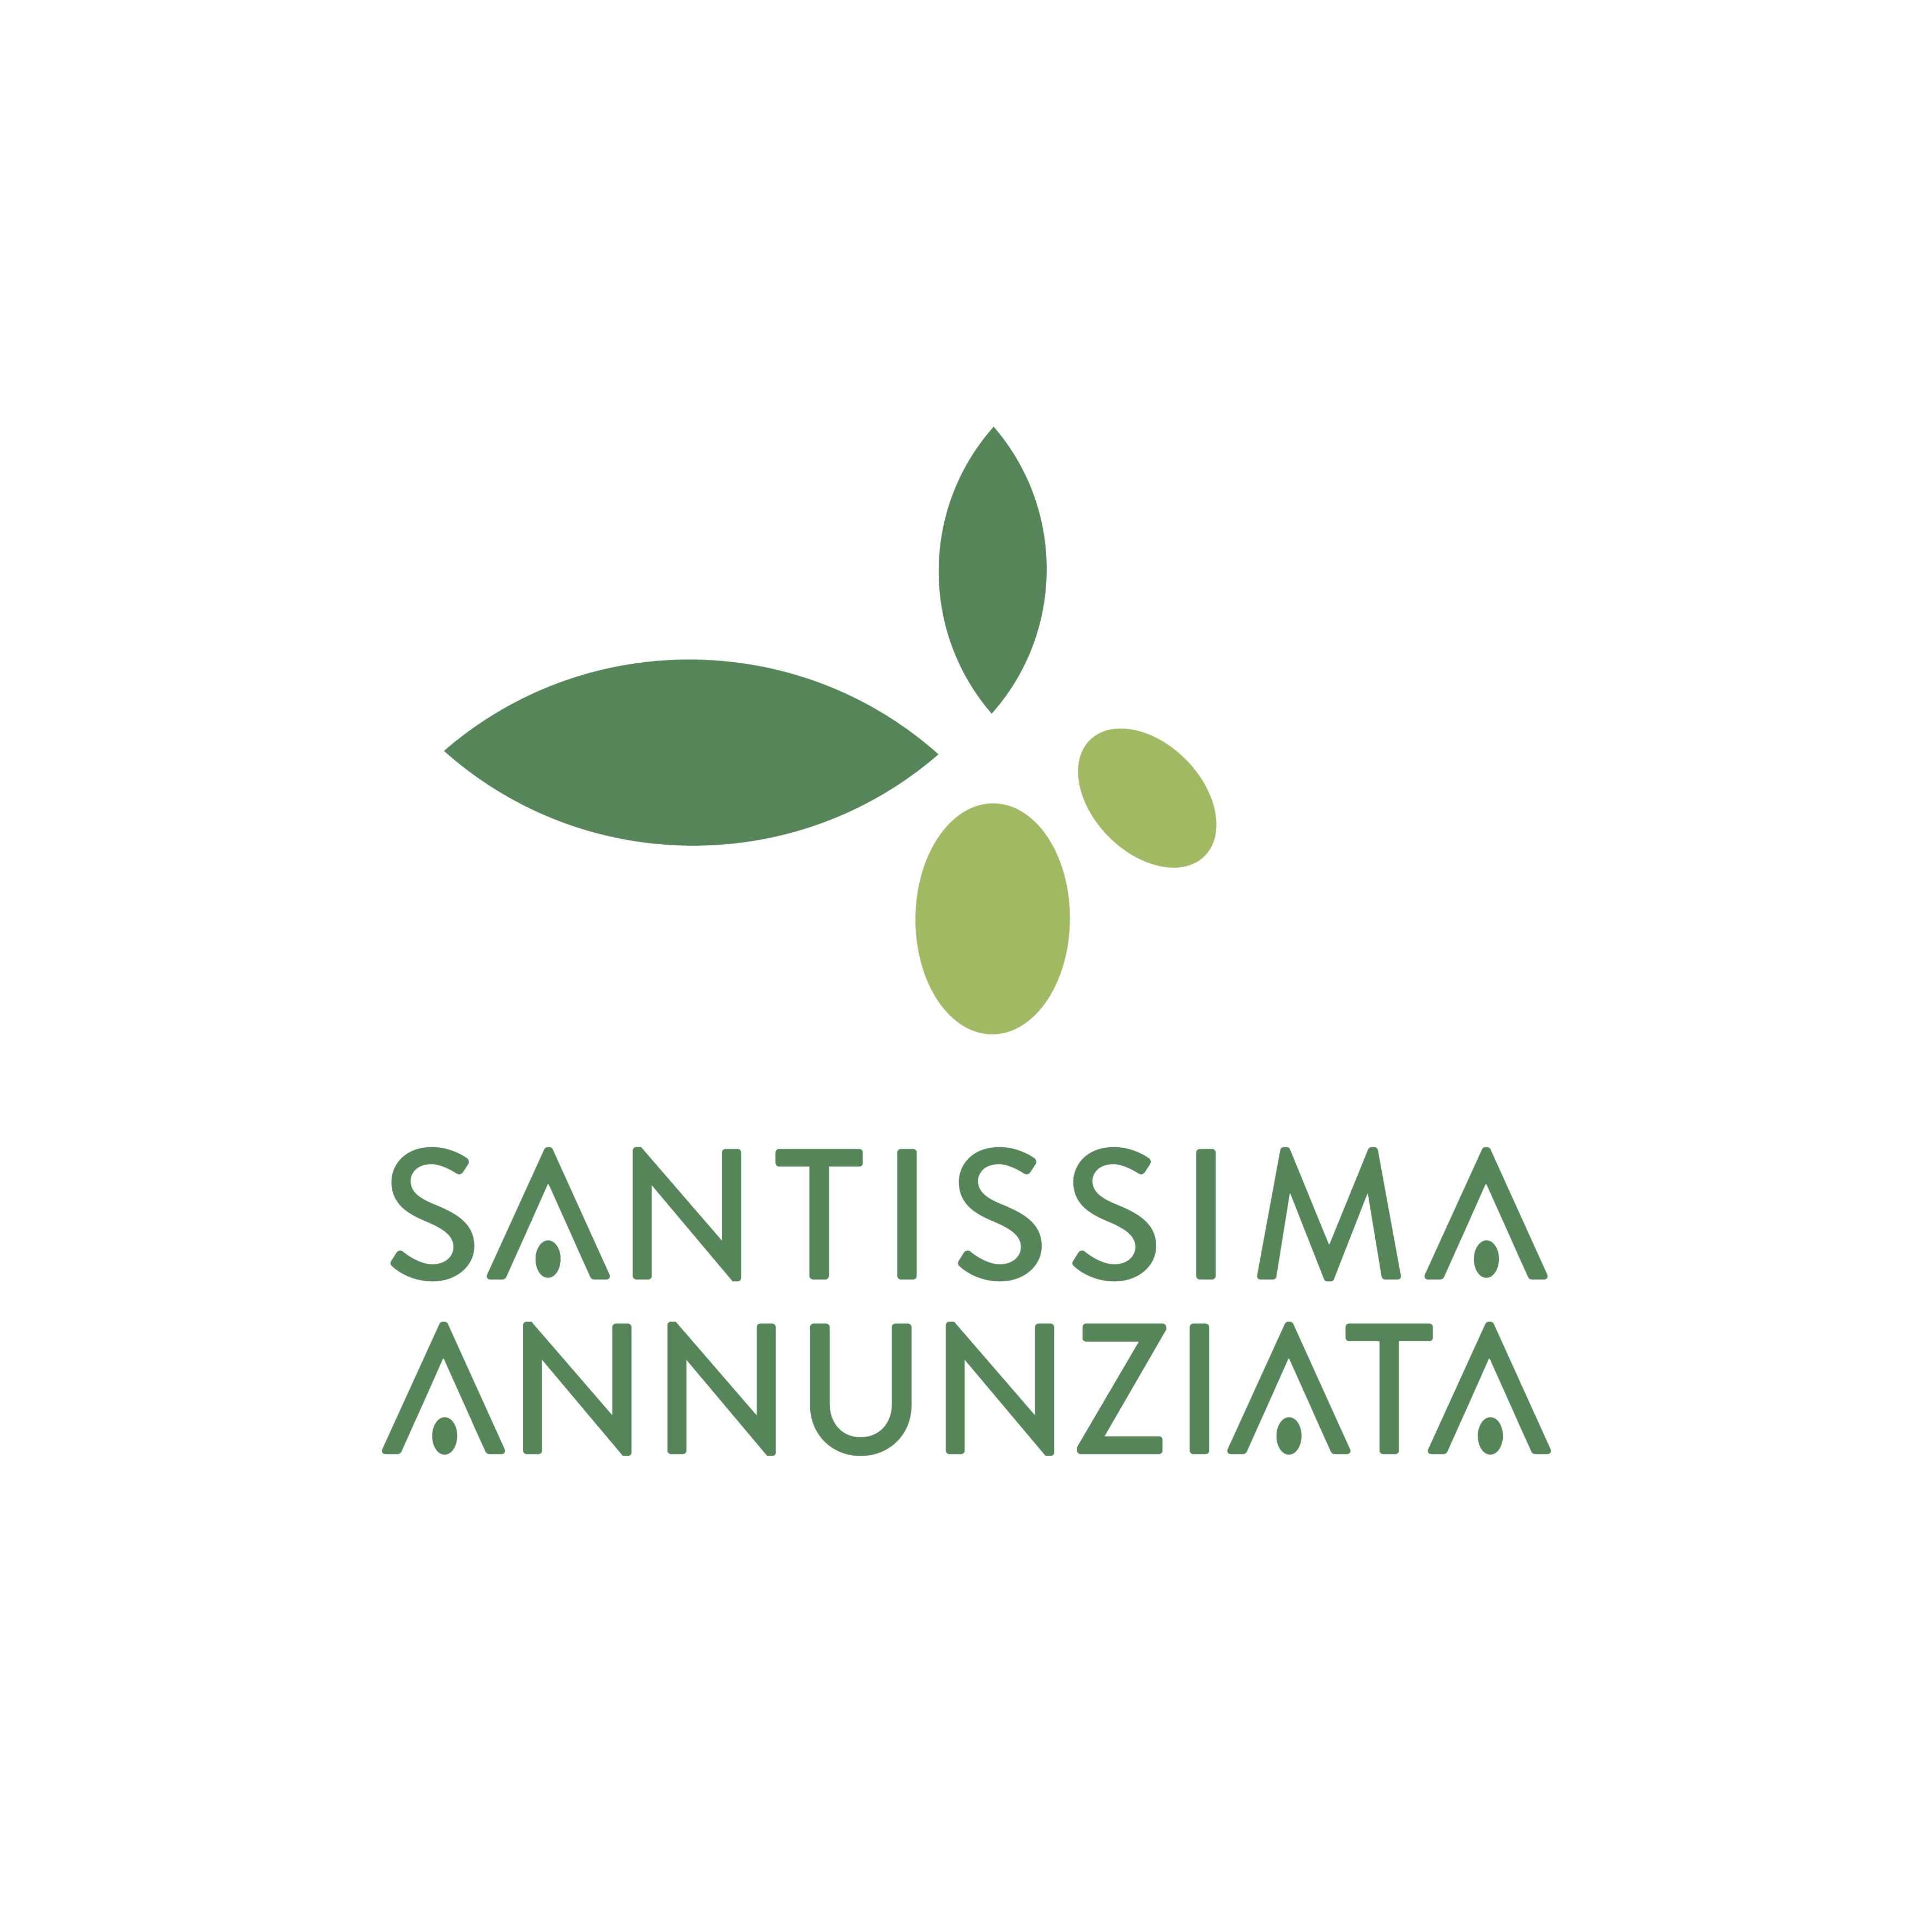 (c) Ssannunziata.it